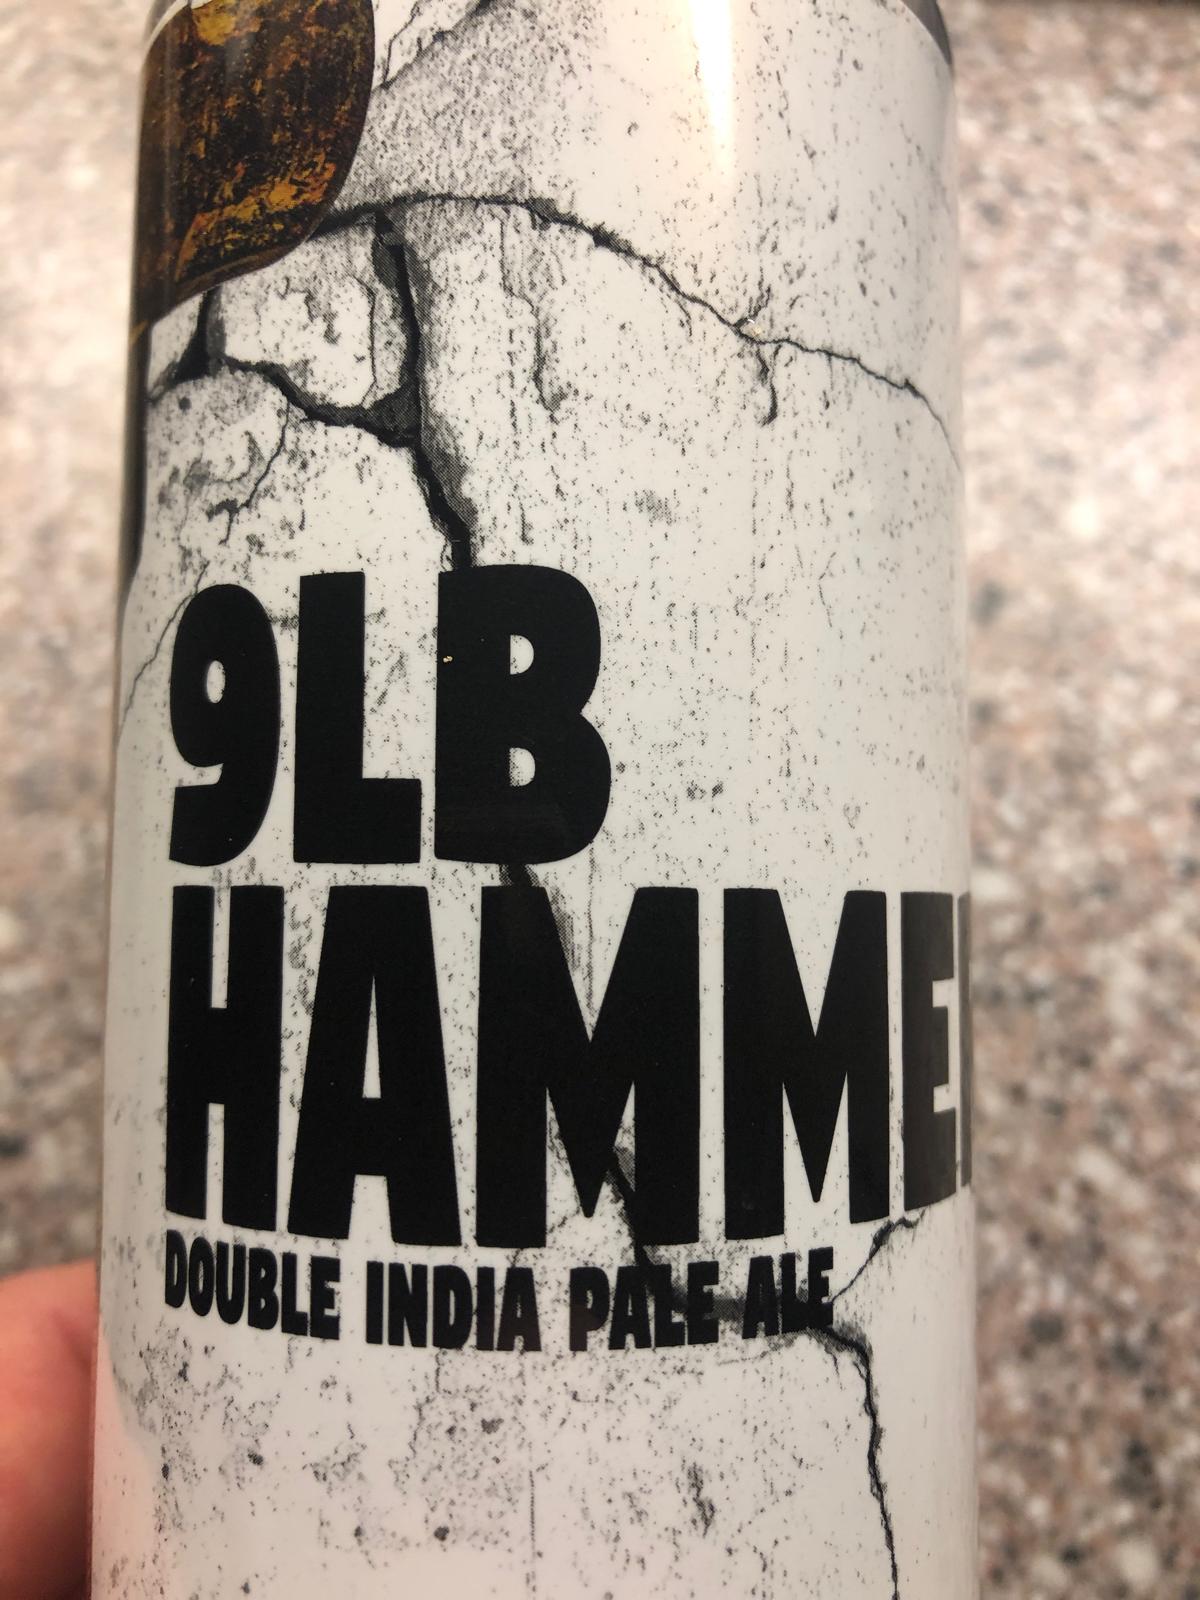 9lb Hammer